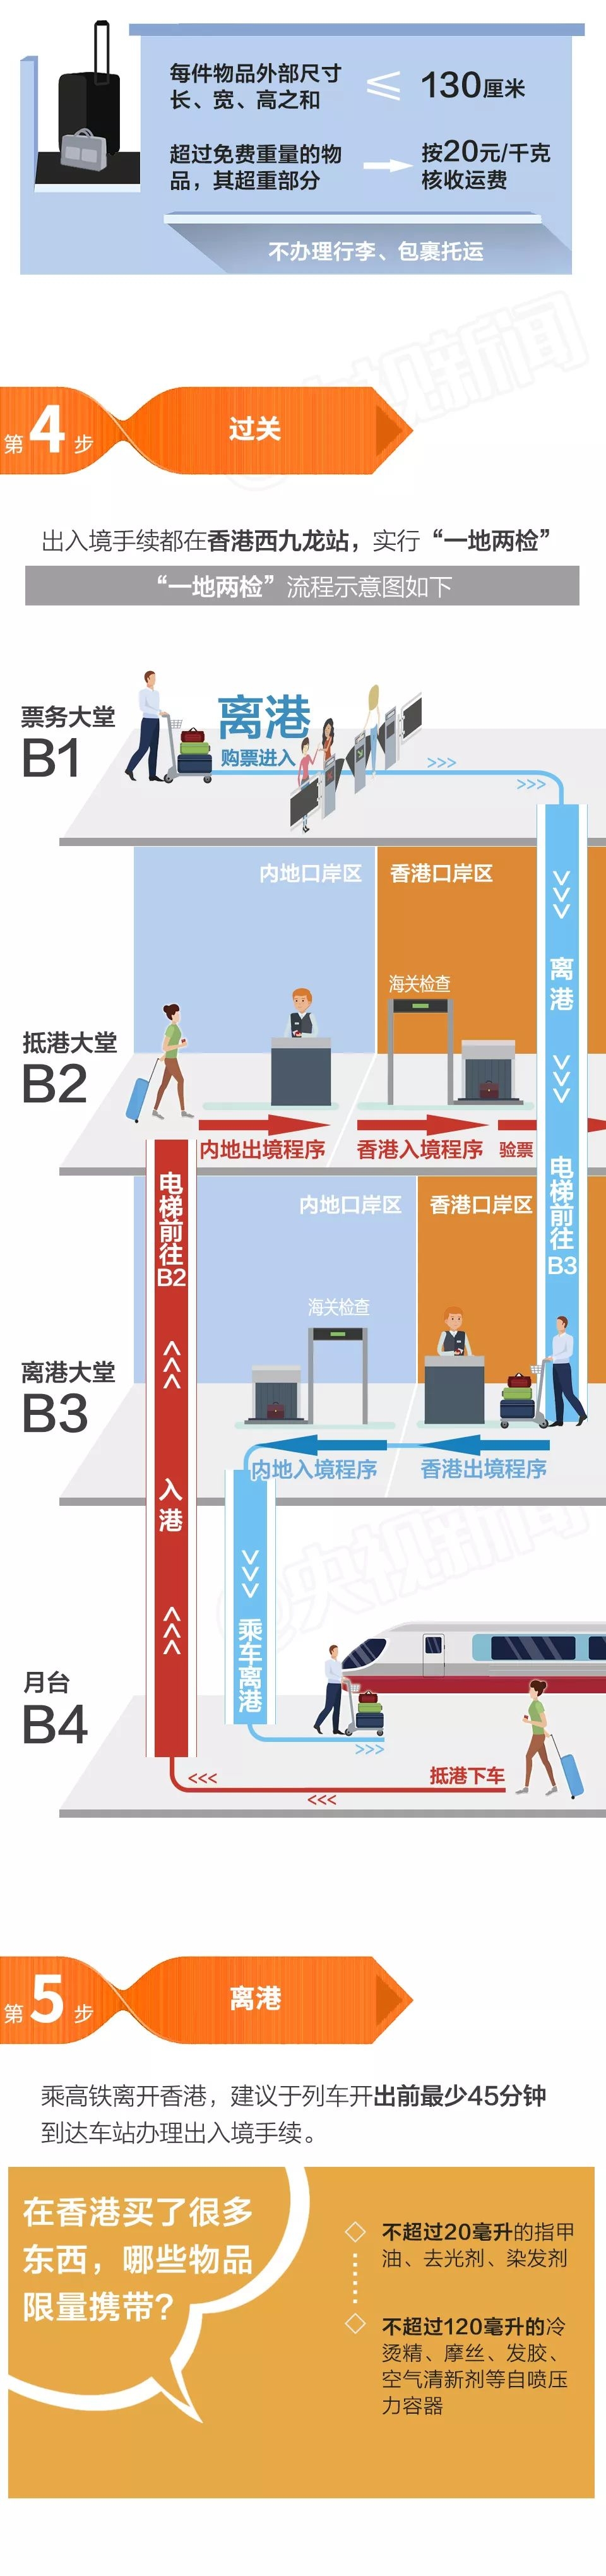 北京如何乘坐高铁去香港(证件+买票方式+乘车规定+过关安检流程)[墙根网]